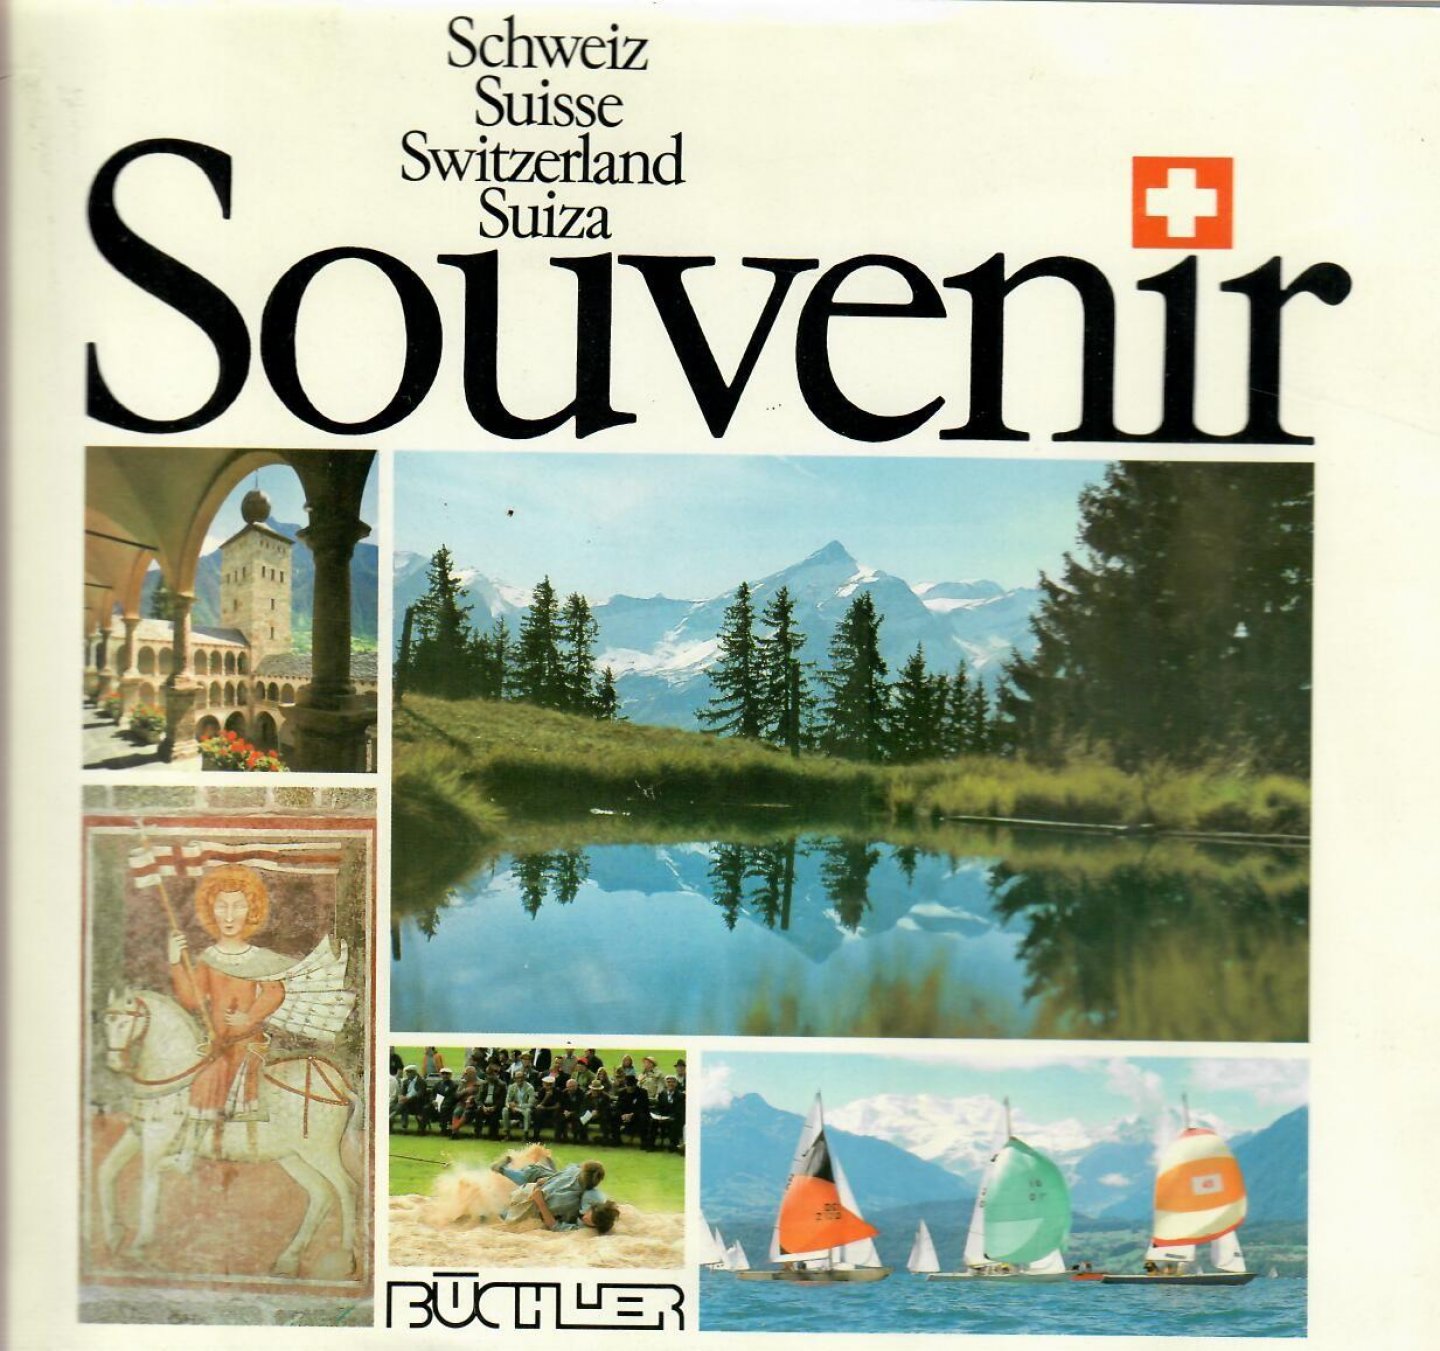 Streit, Conrad - Souvenir Schweitz Suisse Switzerland Suiza